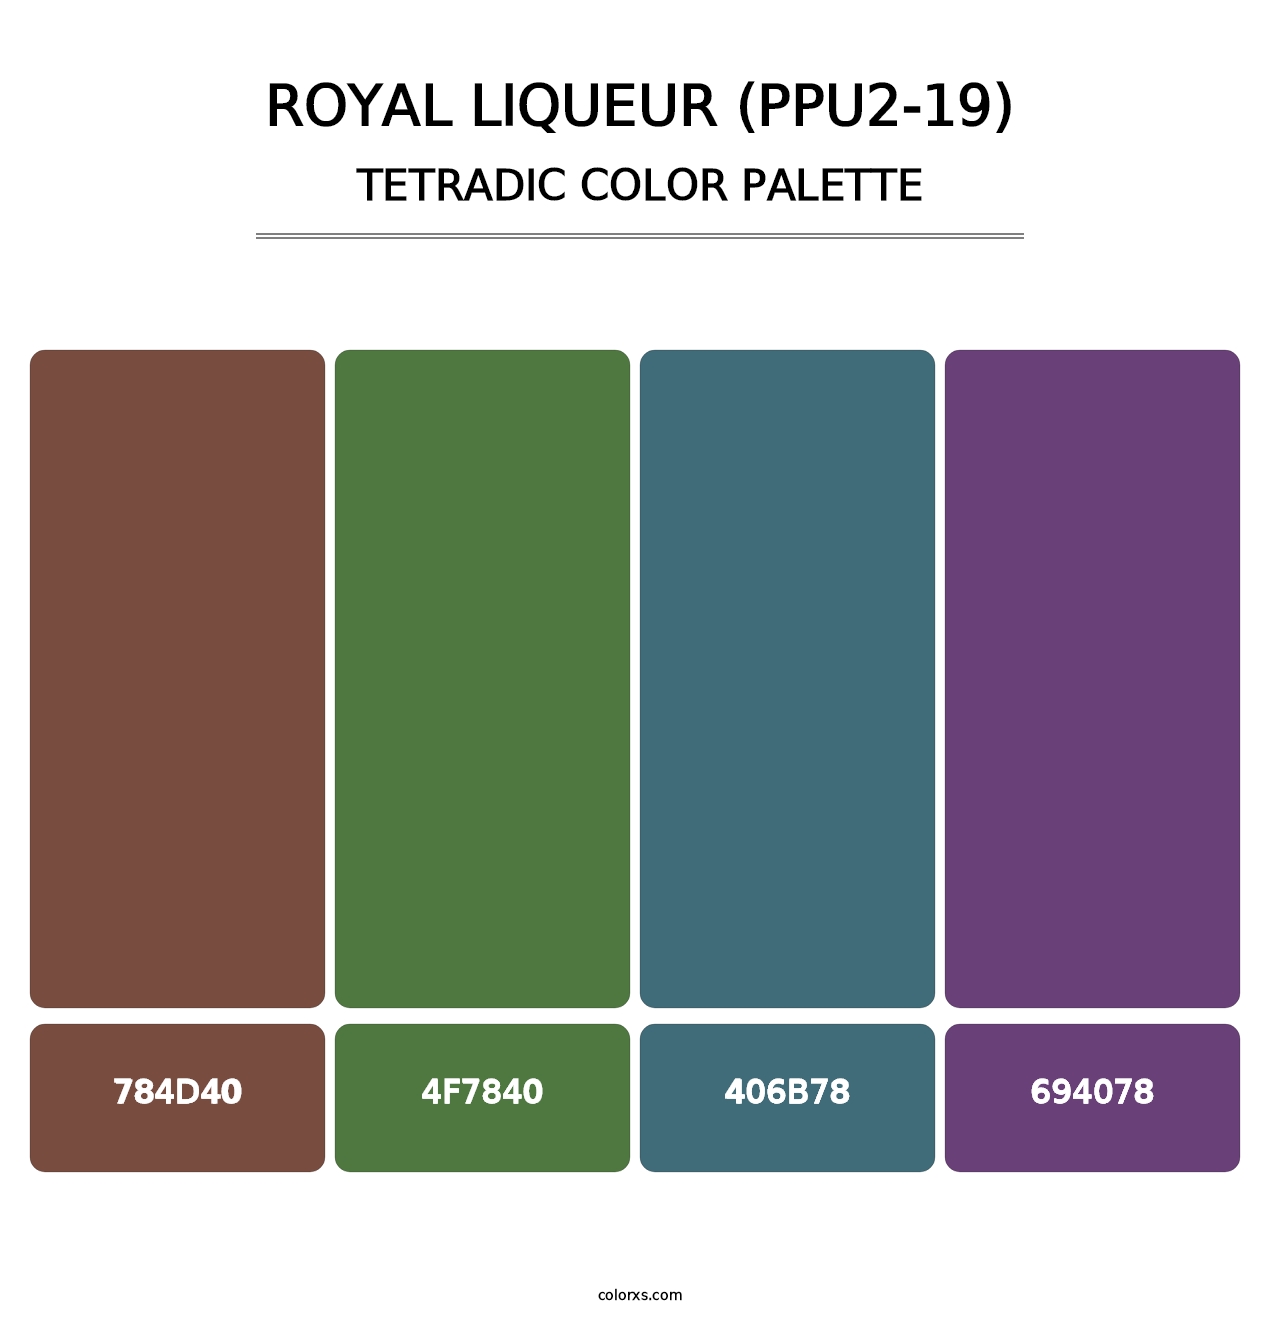 Royal Liqueur (PPU2-19) - Tetradic Color Palette